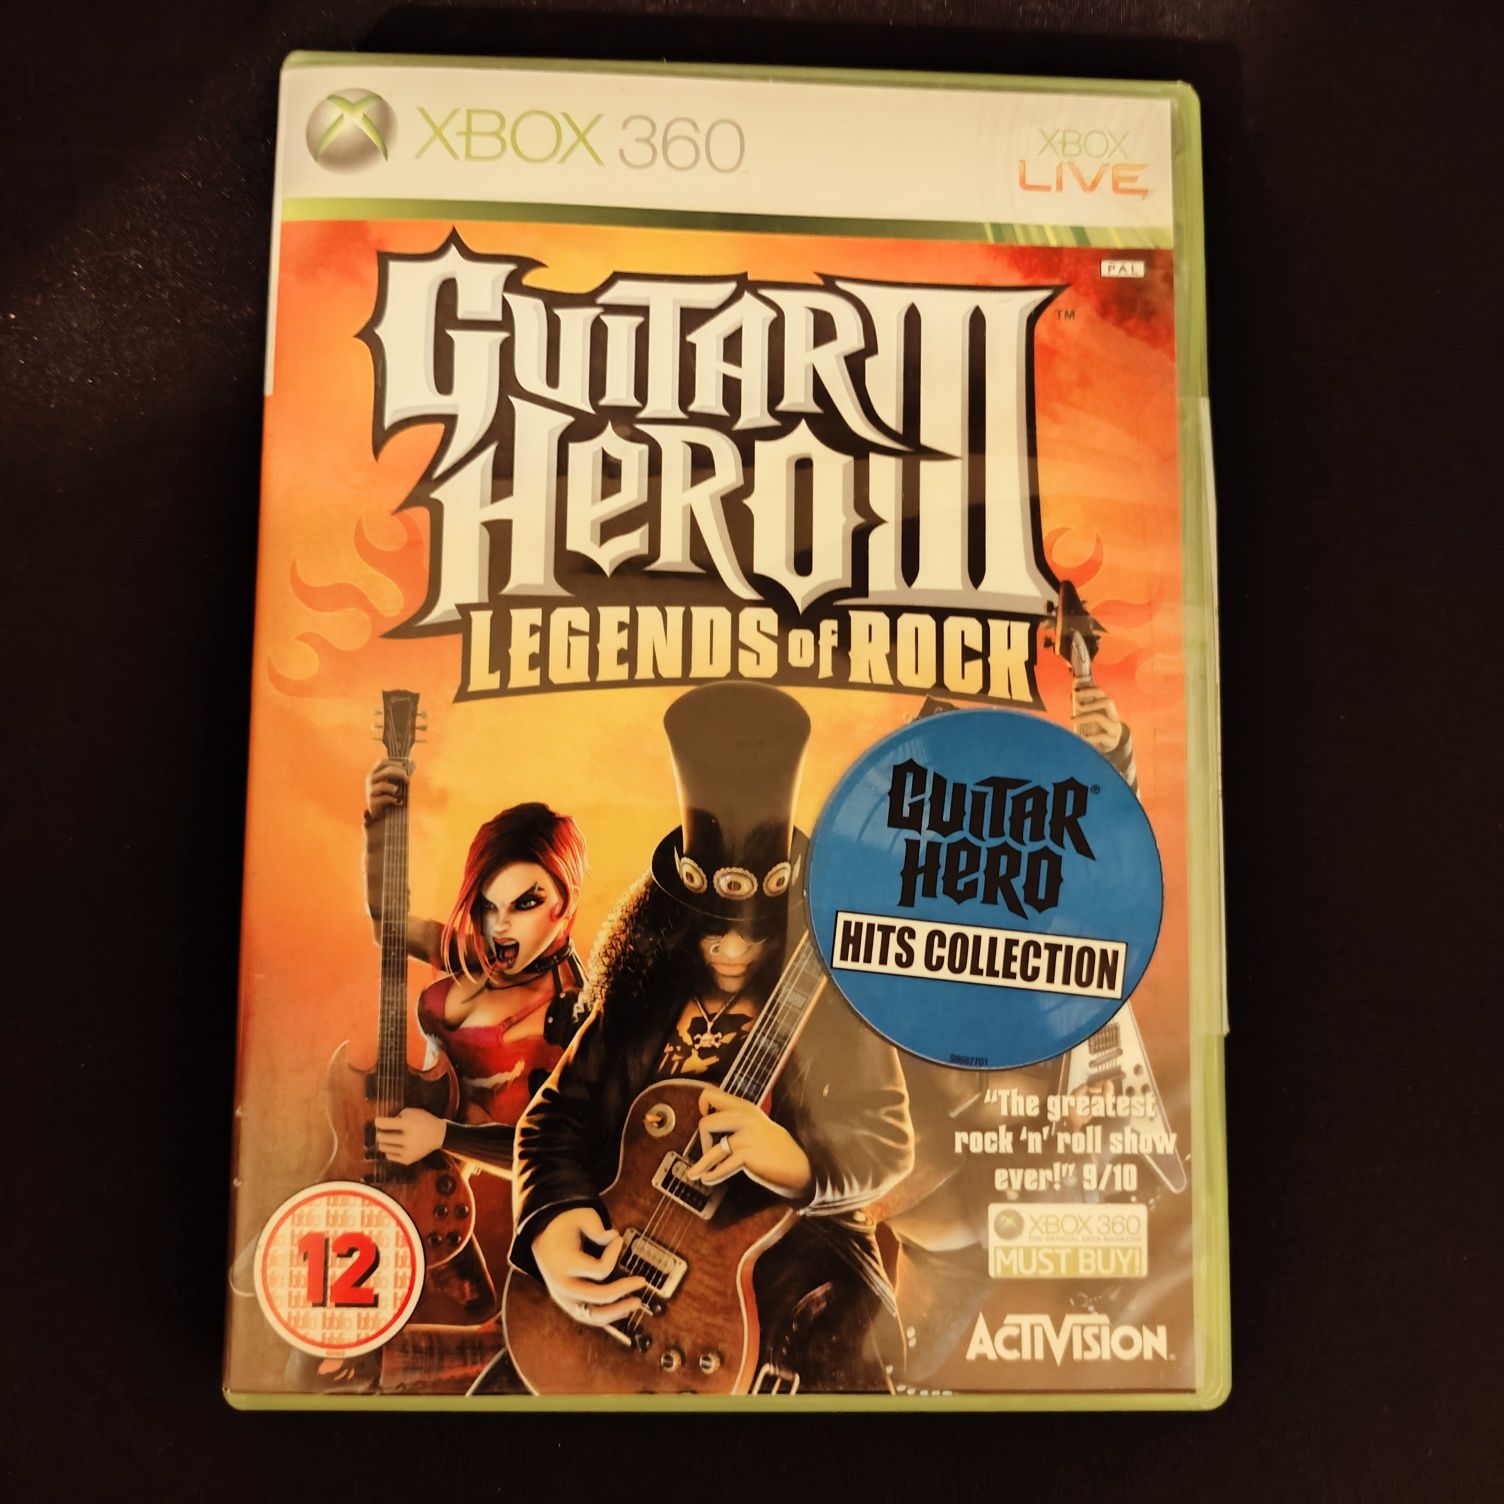 Guitar Hero III (3) legends of rock